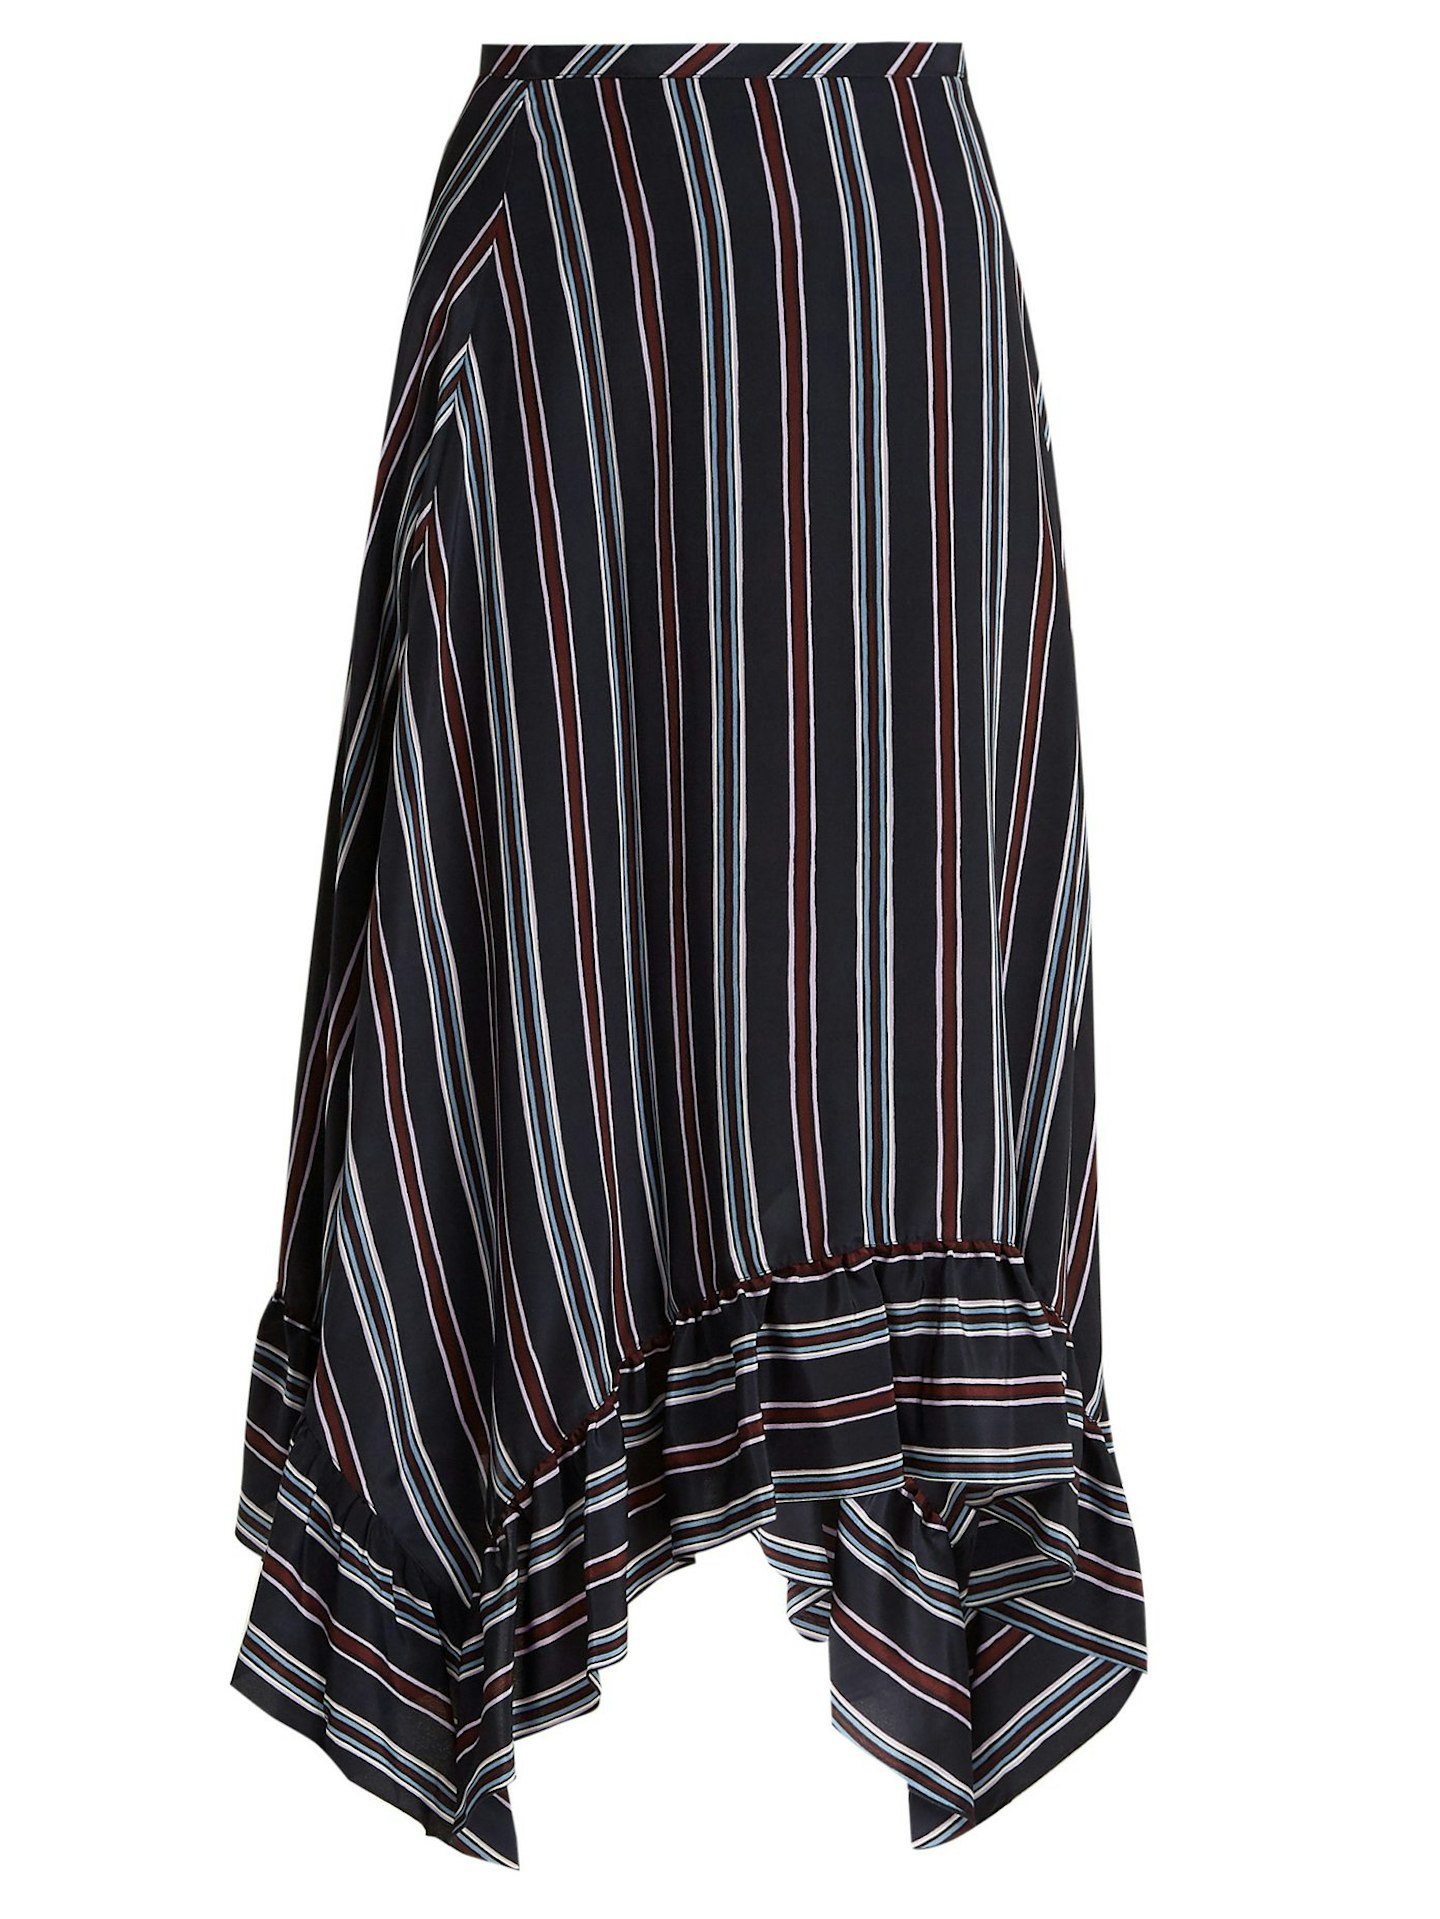 See By Chloe, Bias-Cut Striped Midi Skirt, £370, Matchesfashion.com